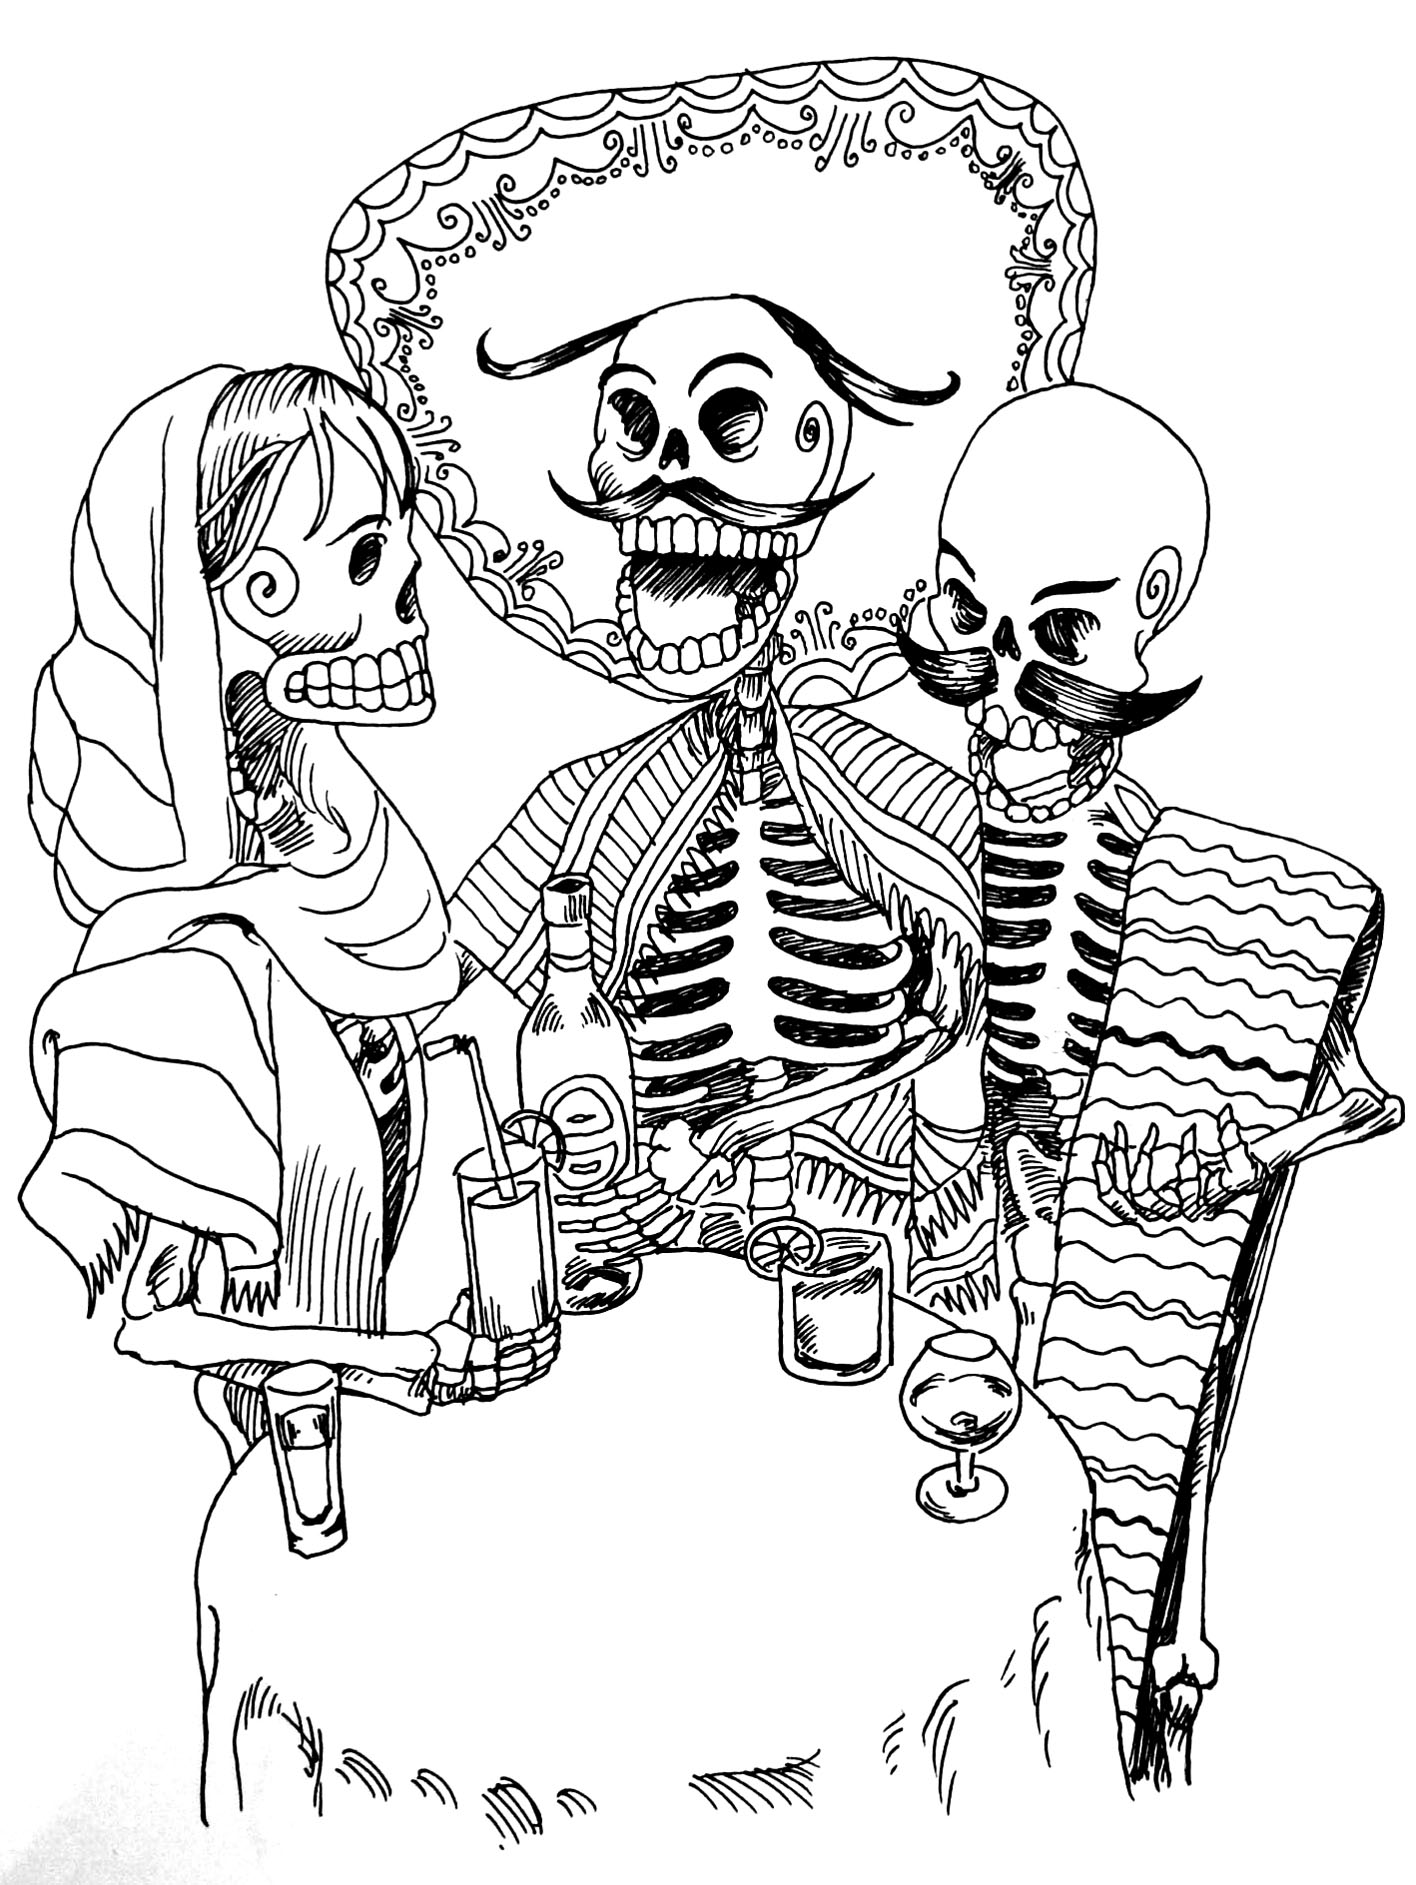 Os esqueletos que festejam a sua morte